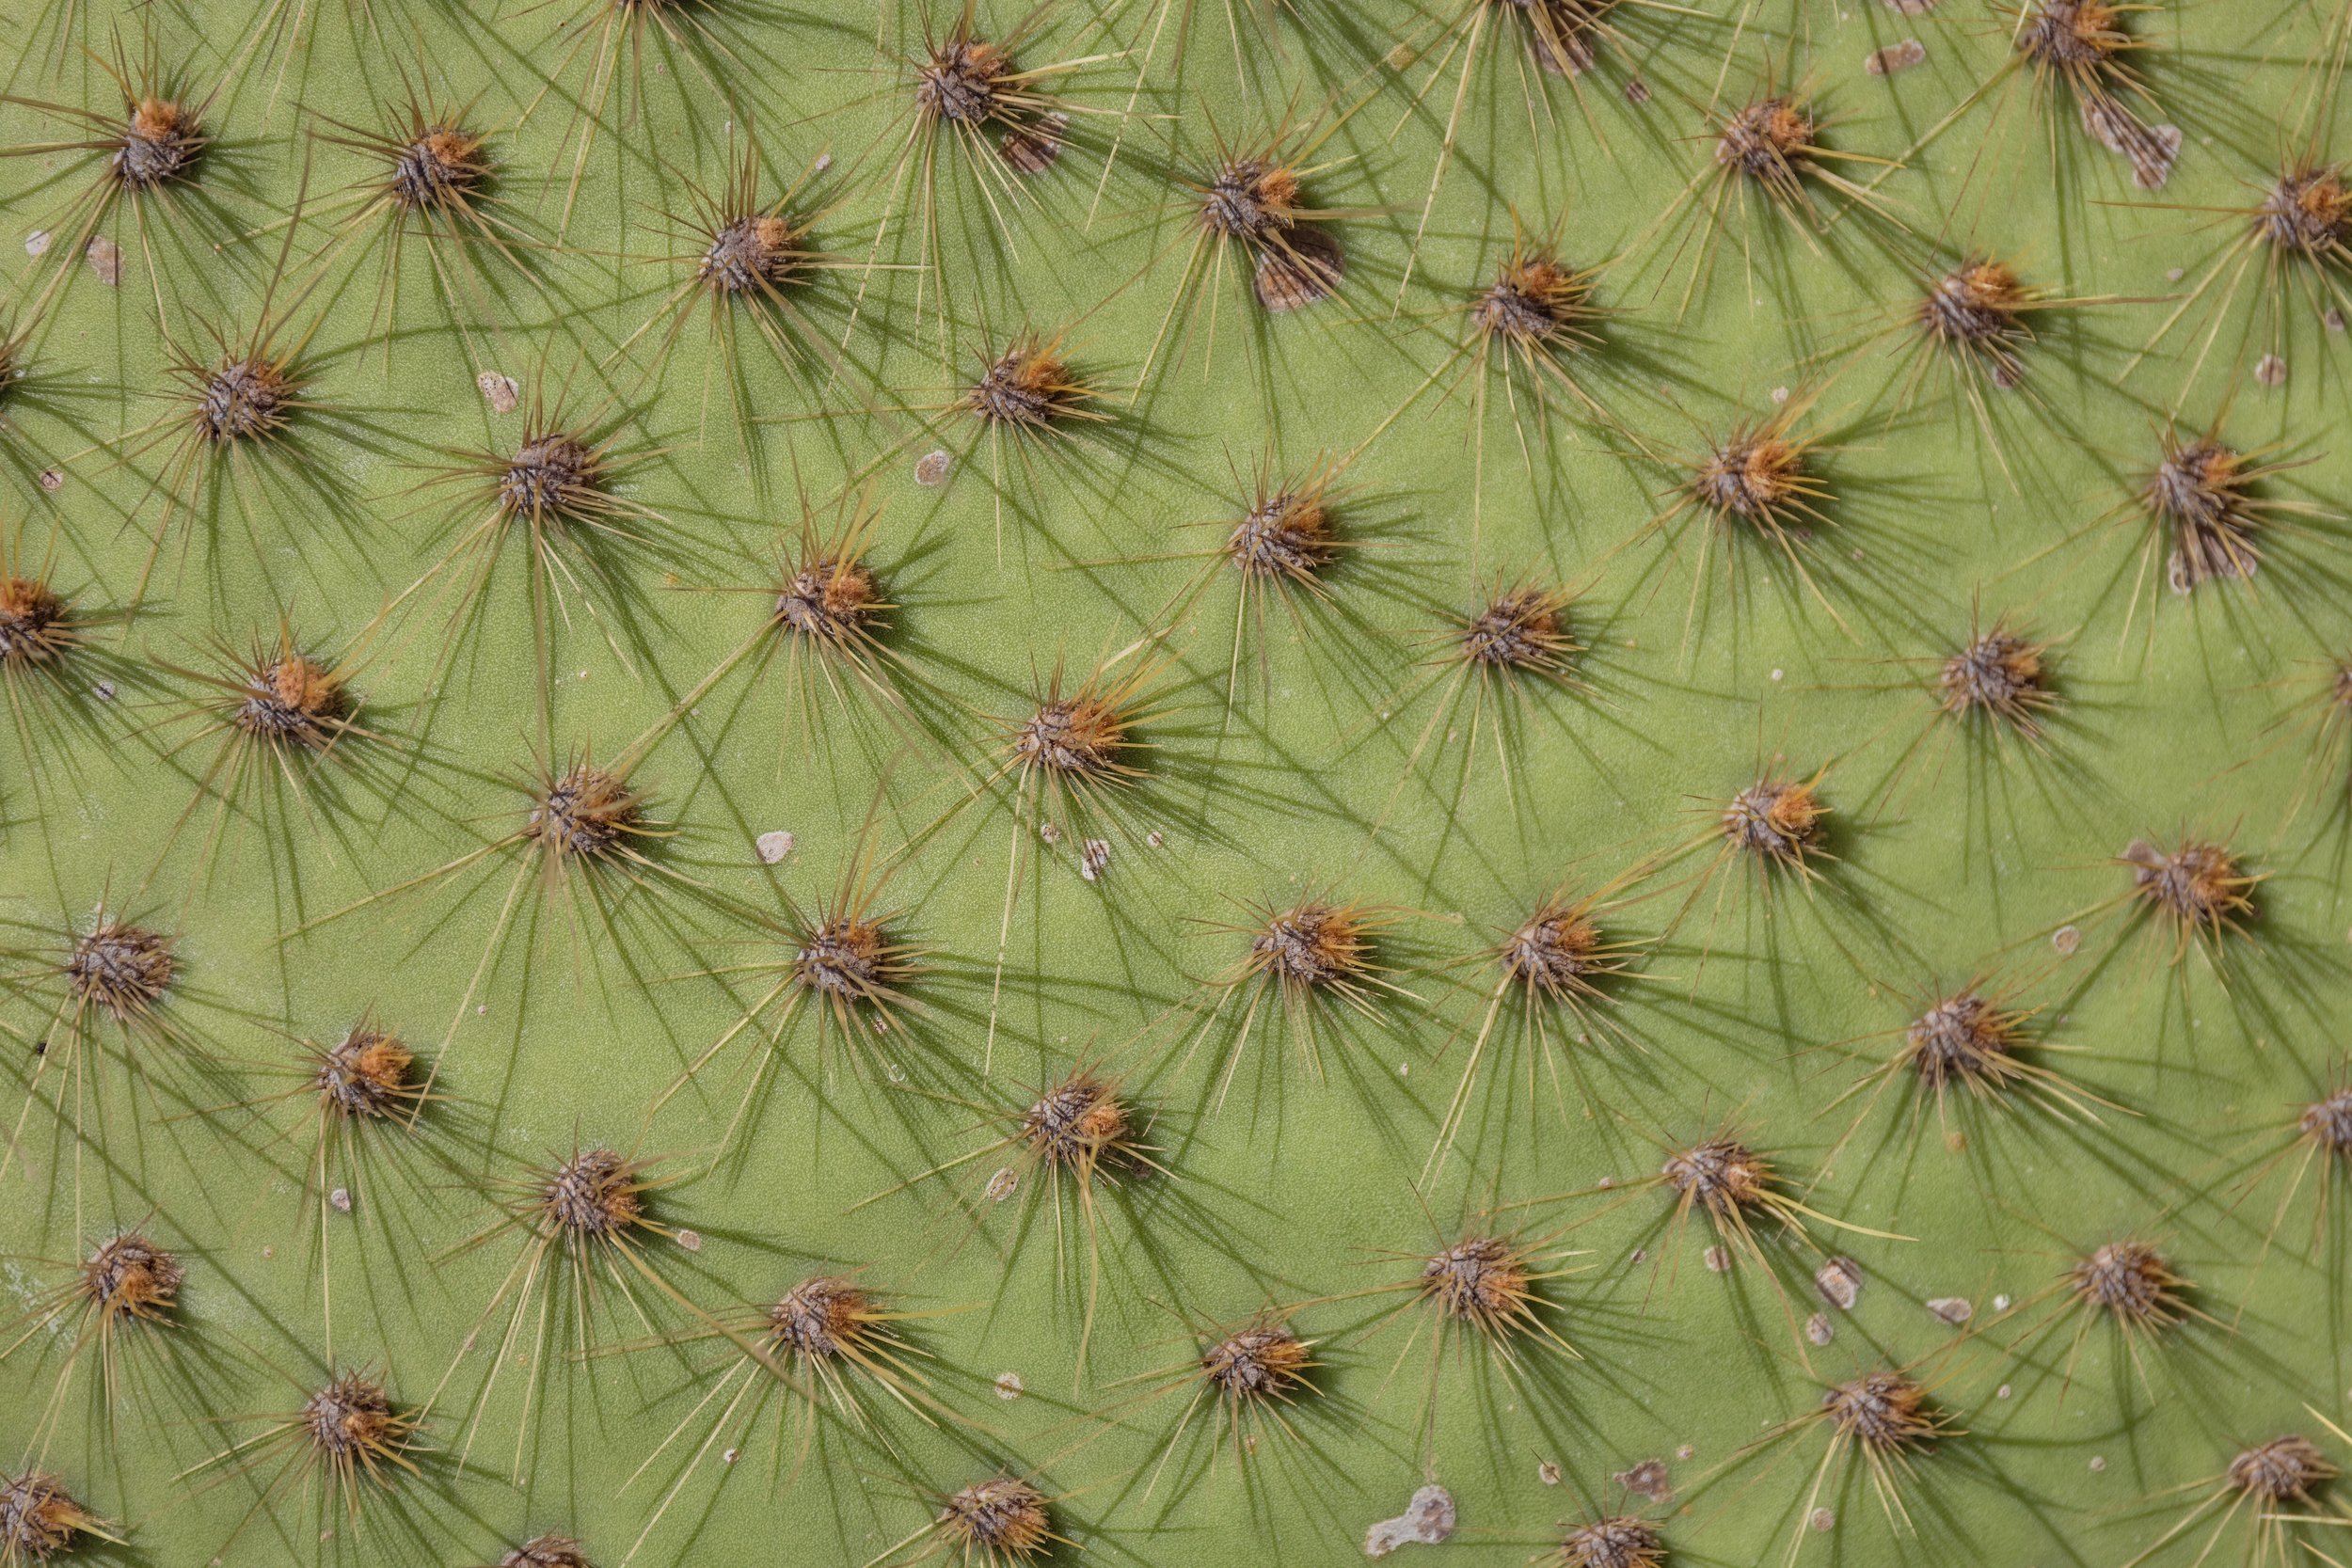 Cactus Detail. Galapagos, Ecuador (Oct. 2023)